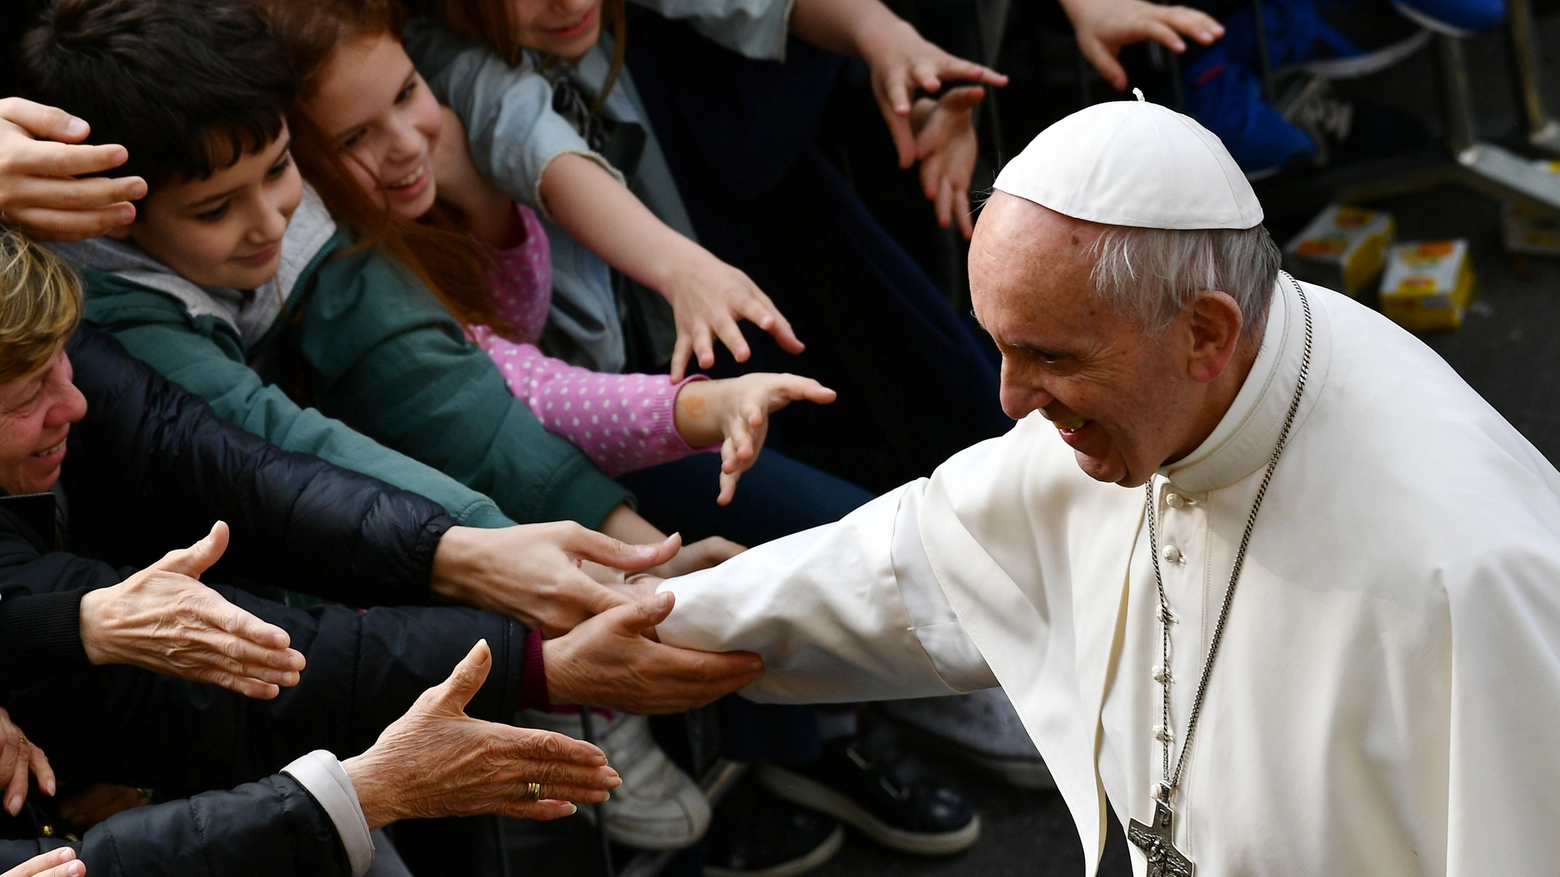 Fuori programma per Bergoglio durante la sua visita a Carpi (Afp)